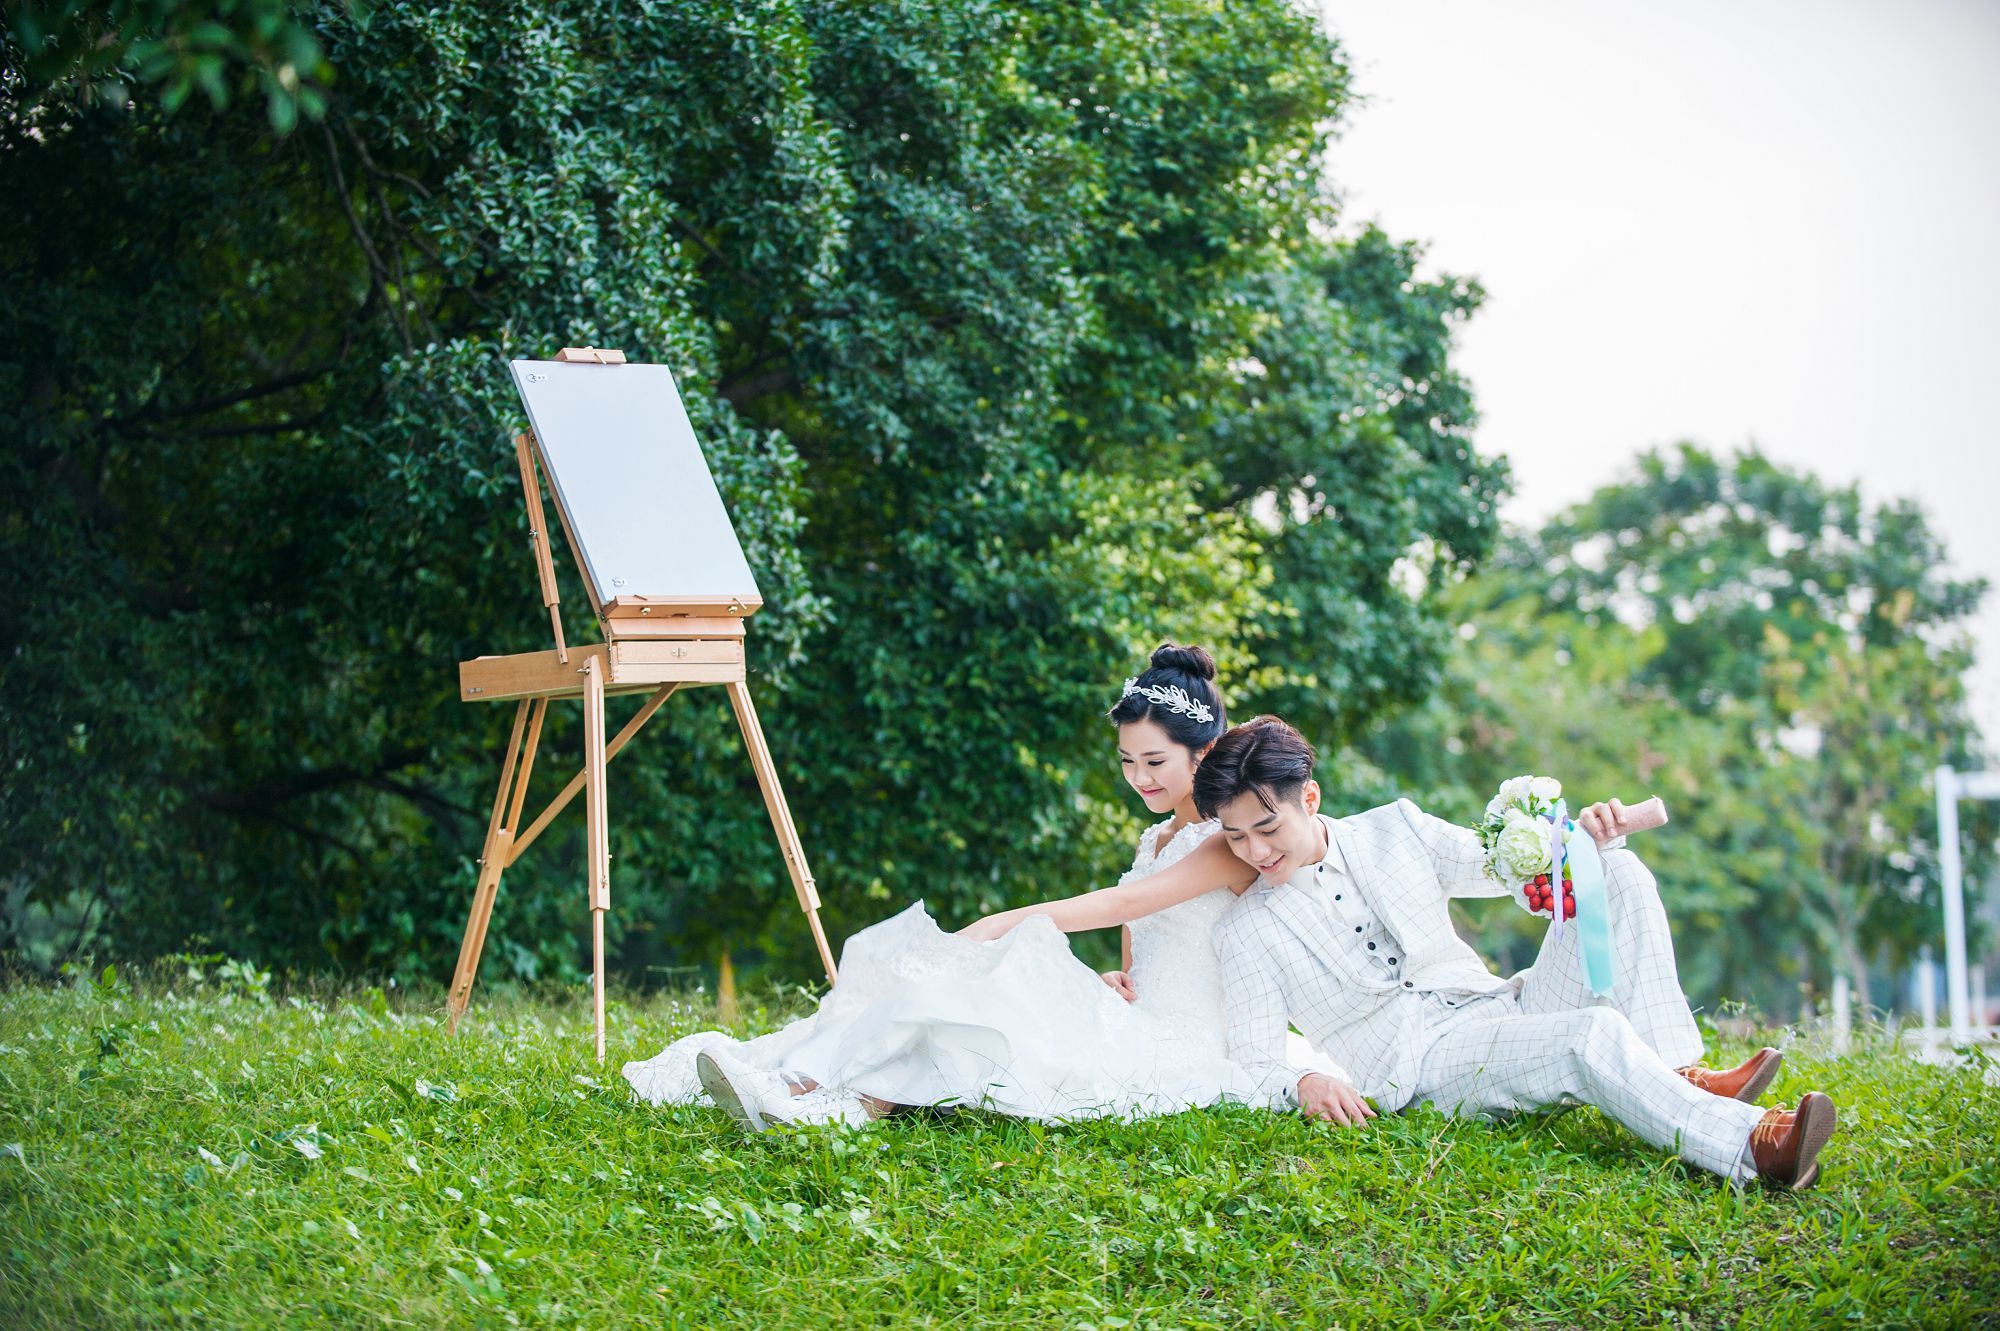 2018年7月广州婚纱照图片,广州婚纱照,婚纱照图片